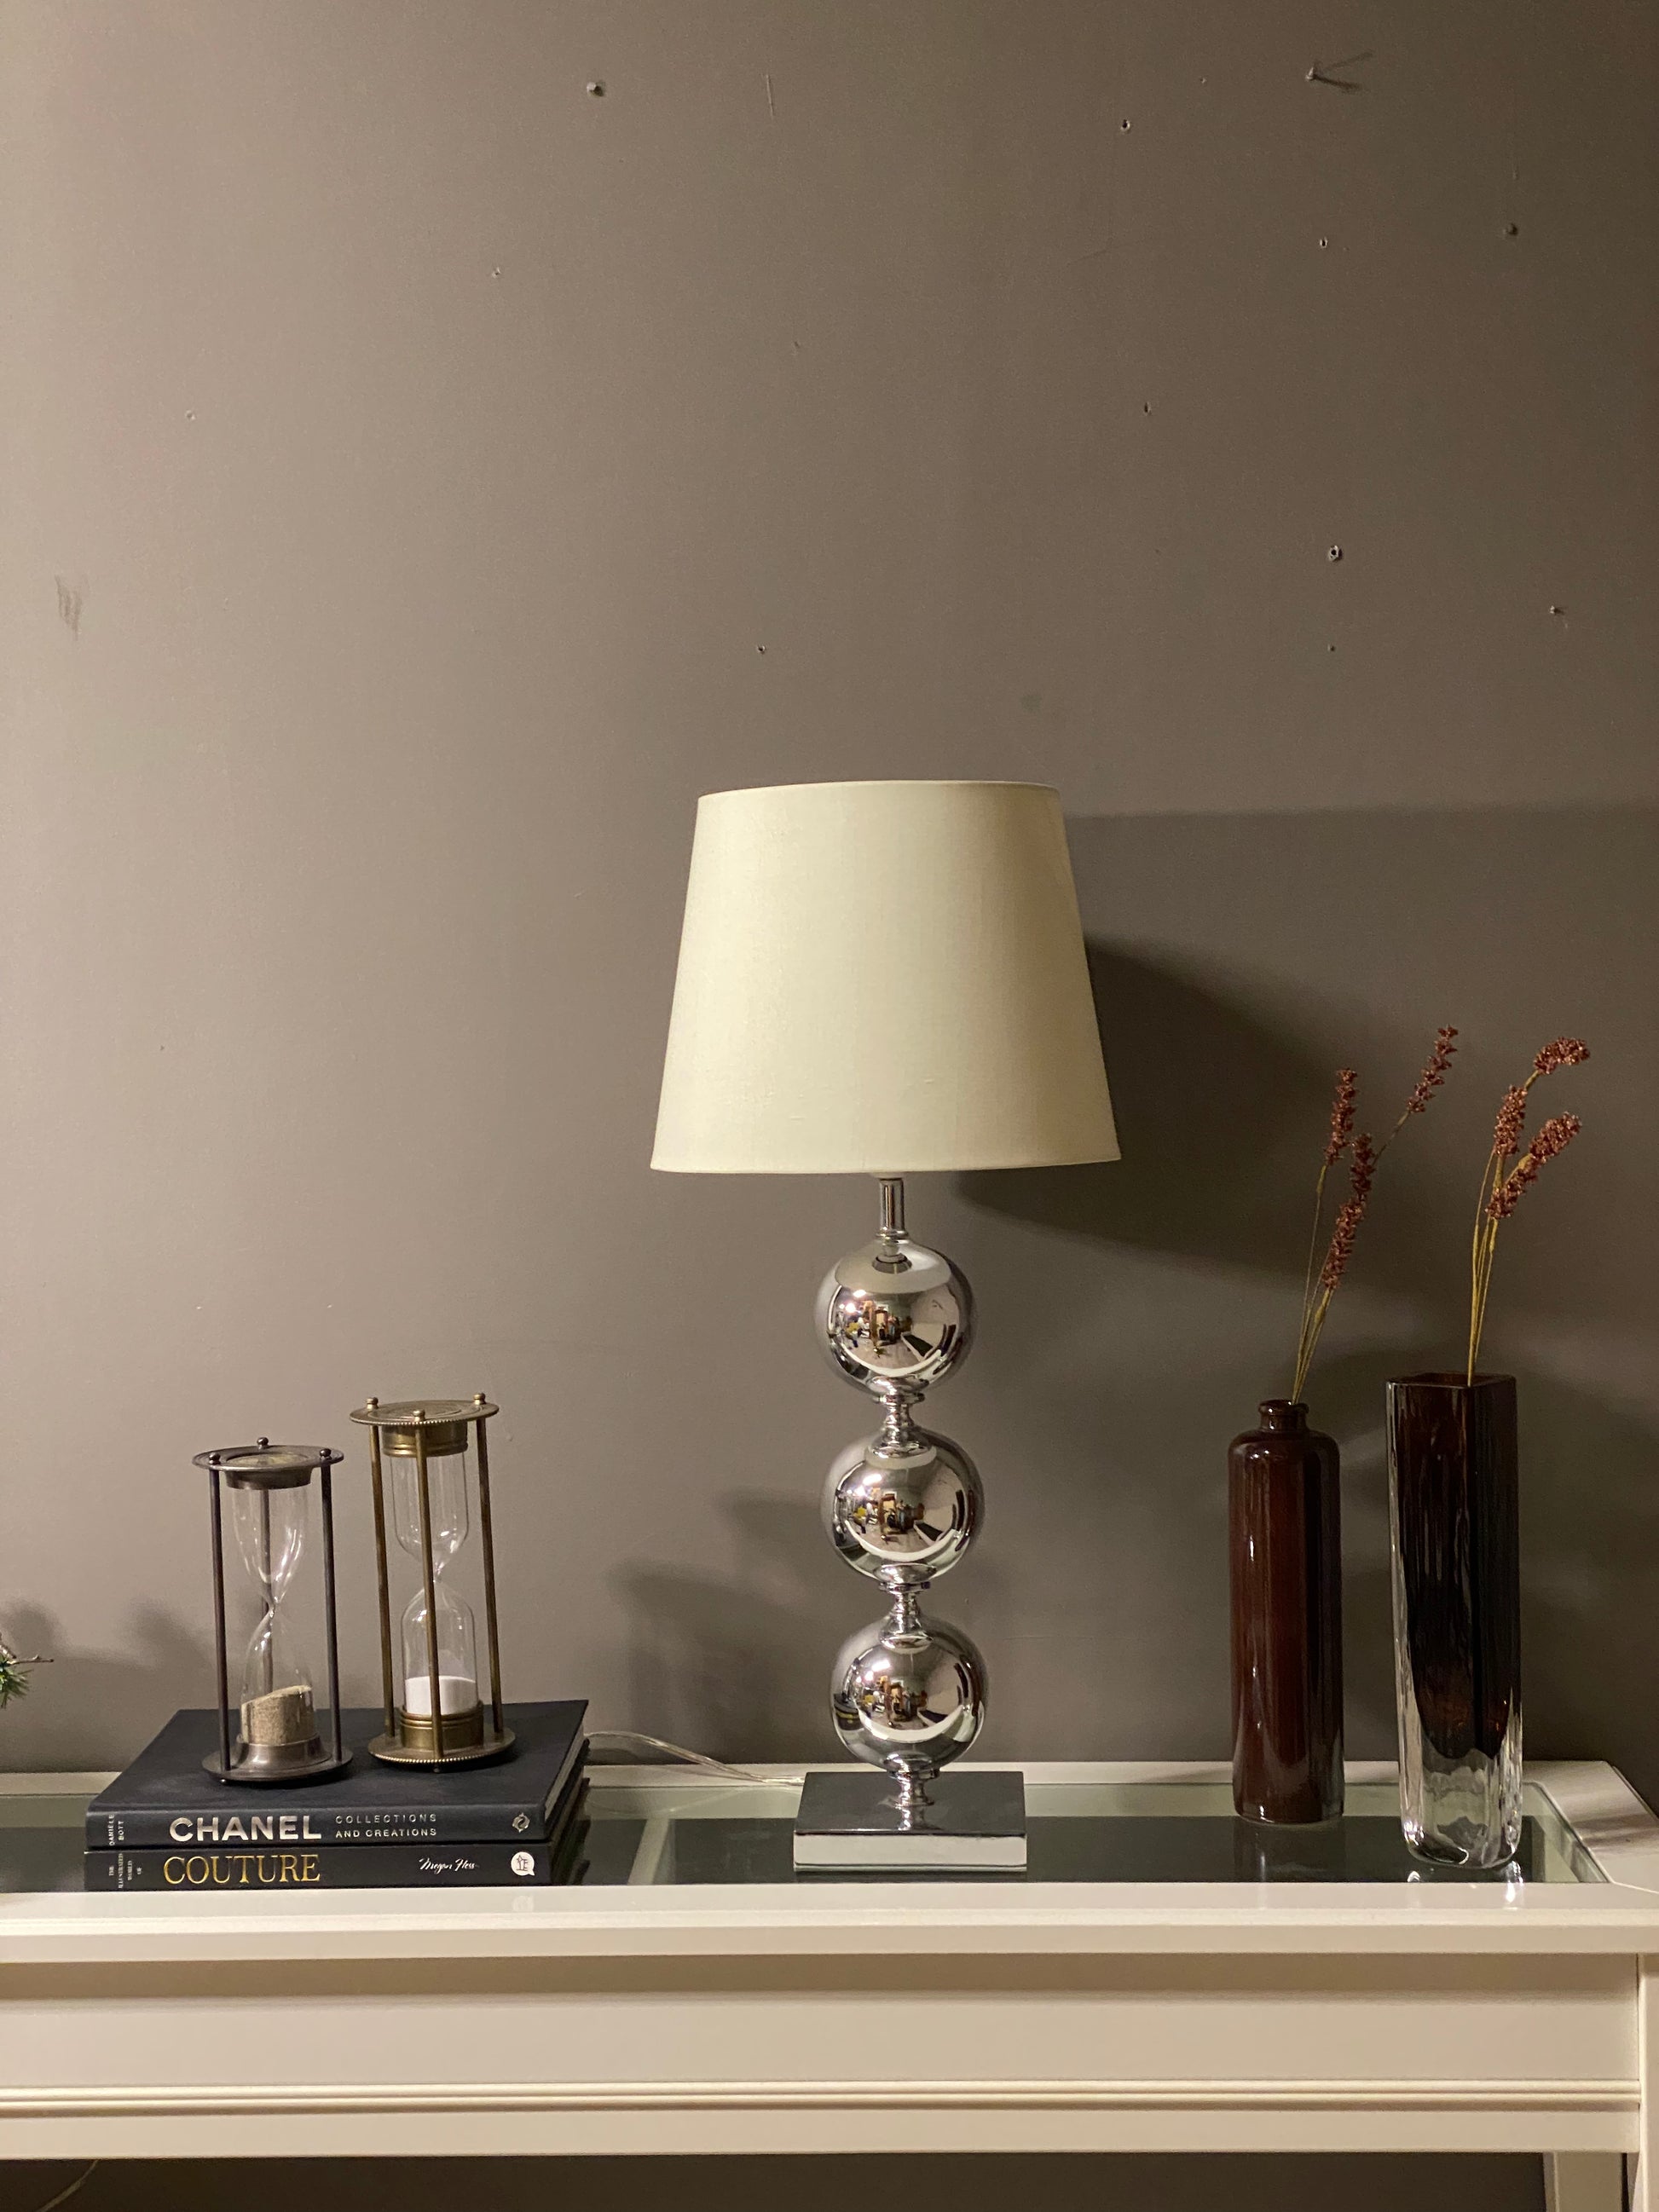 Elegant høy bordlampe - Kvalitetsbrukt Møbel fra Hjembruket på Hjembruket